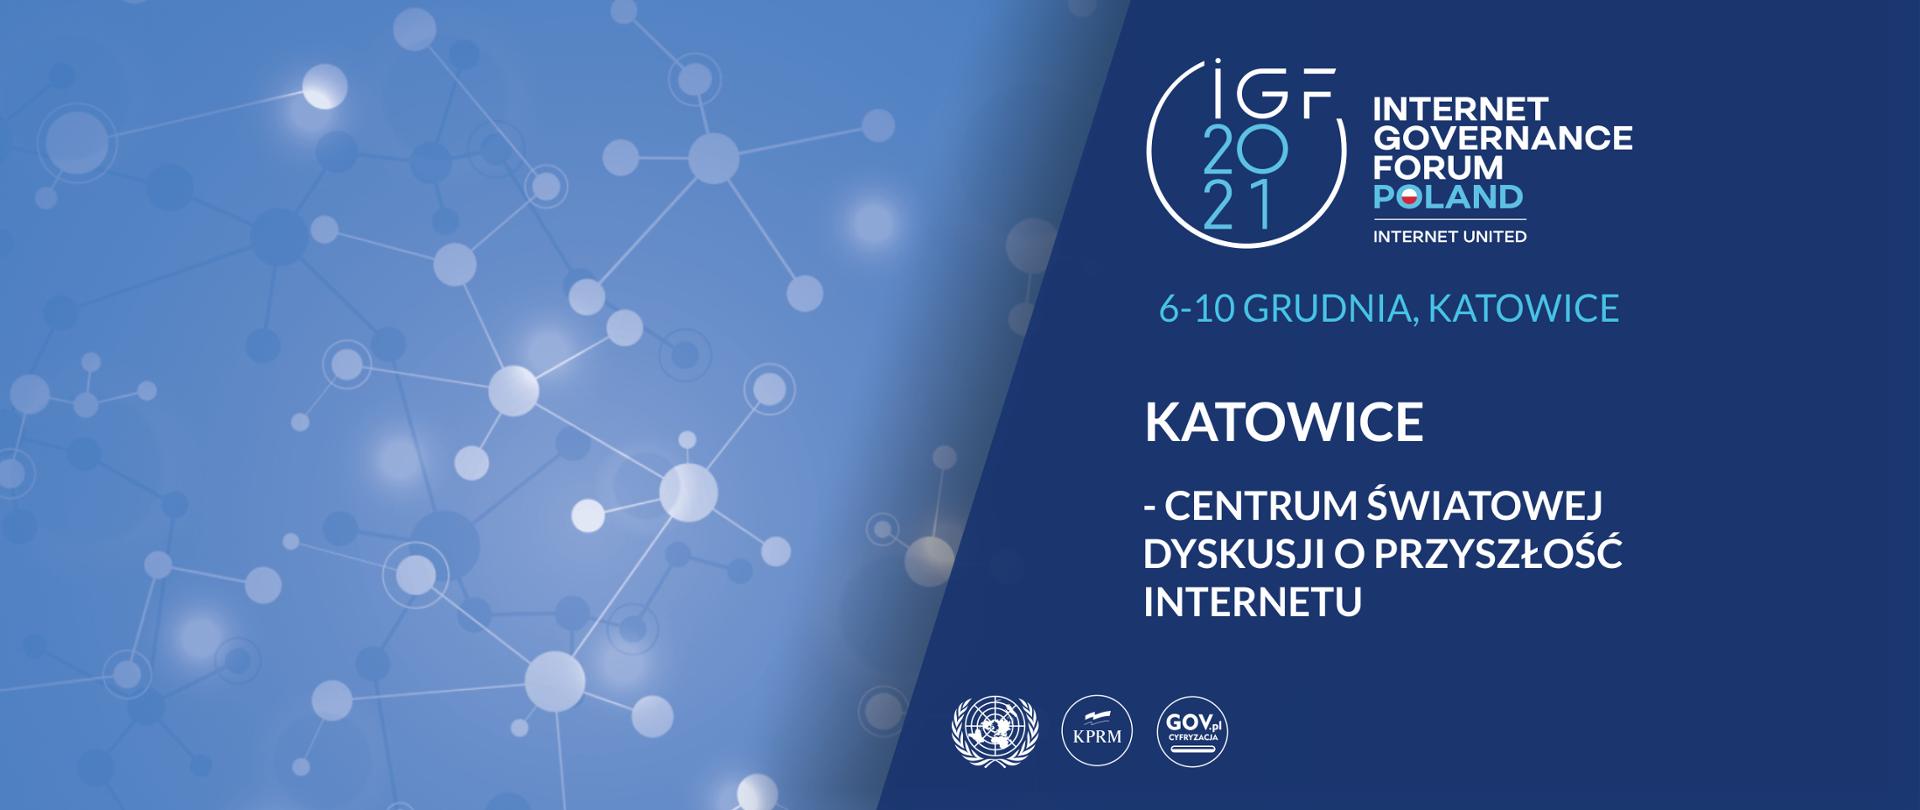 Szczyt cyfrowy ONZ Katowice 